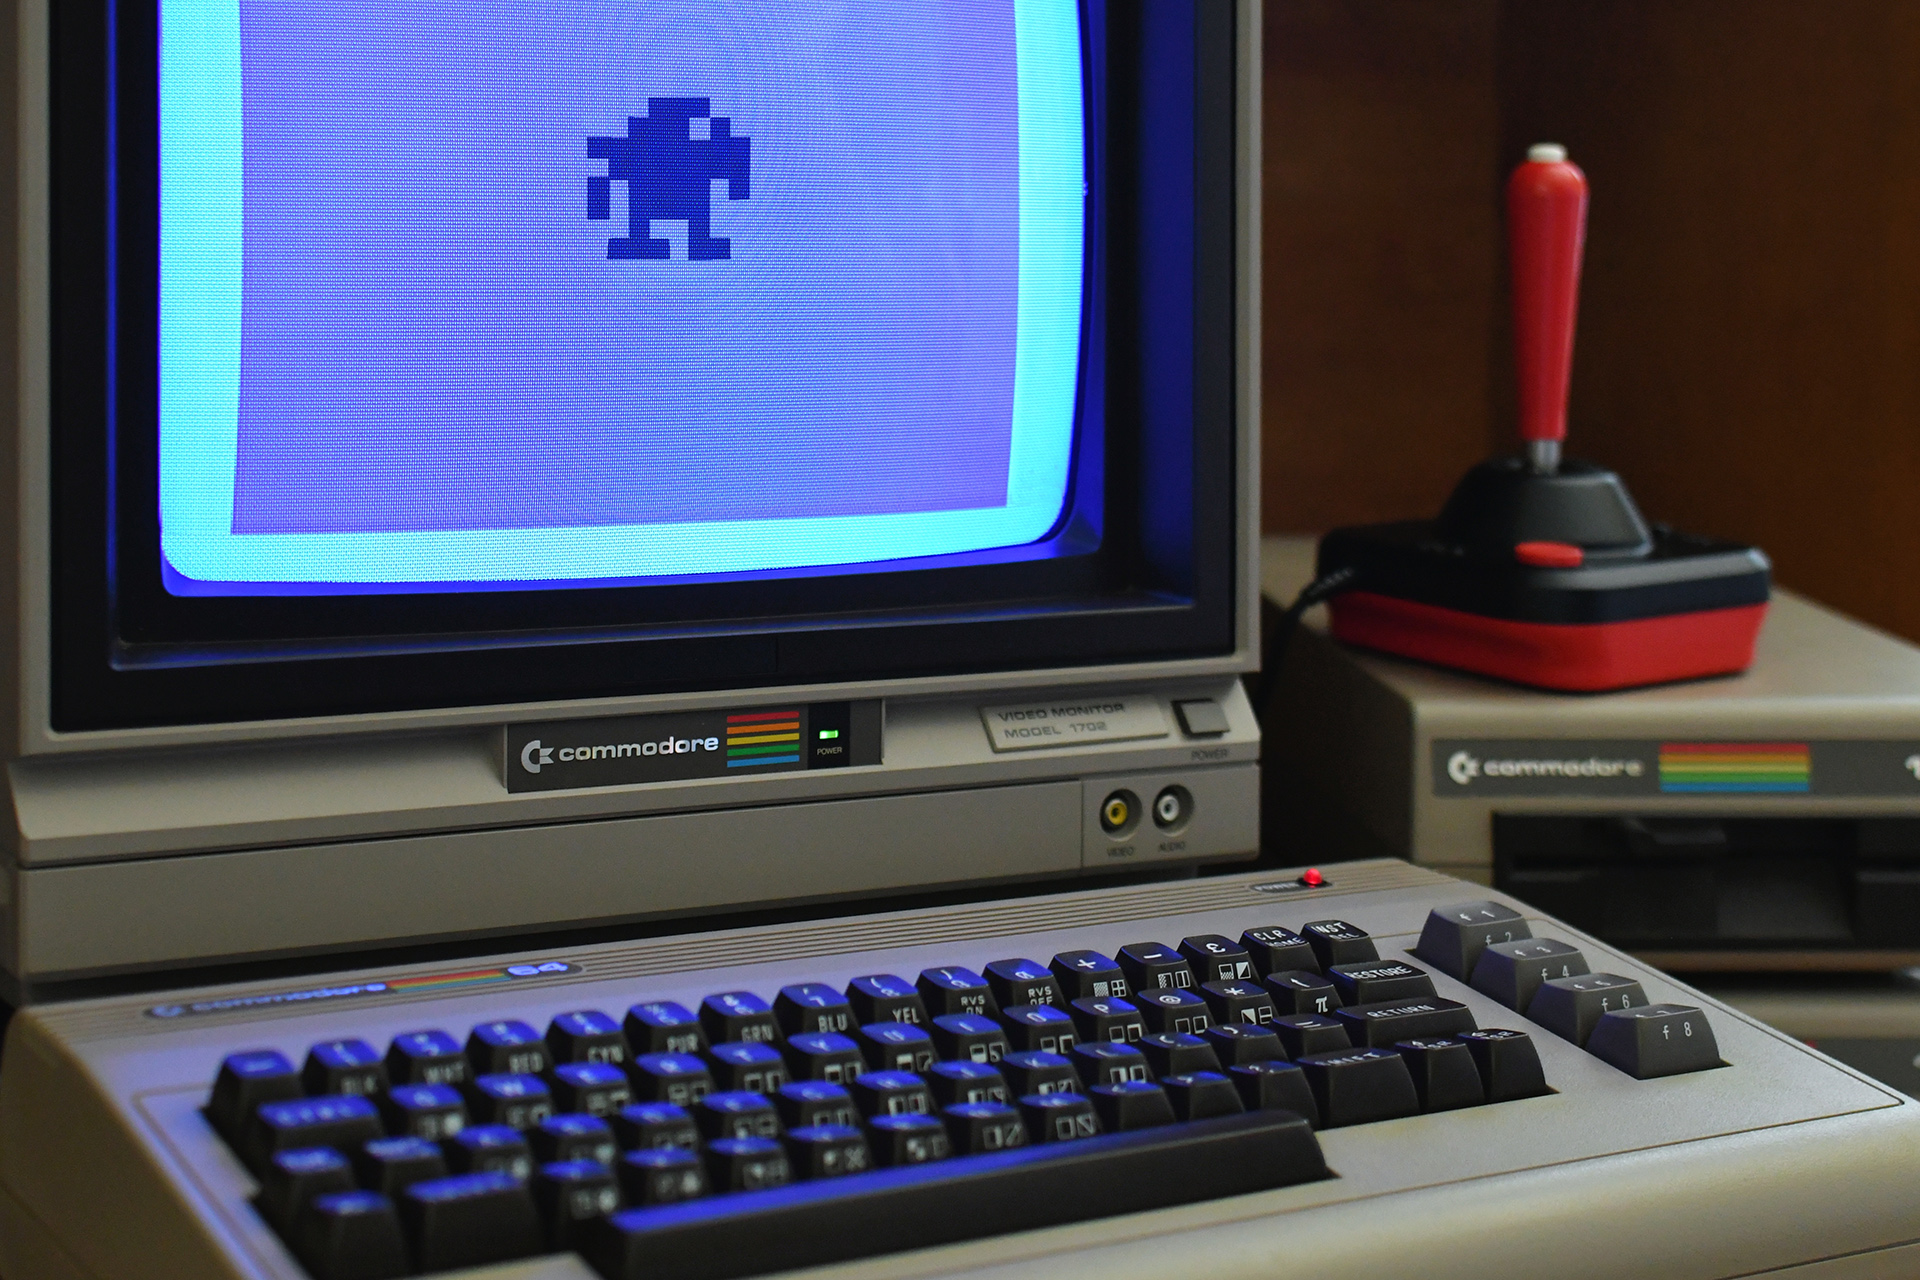 Commodore użyty do generowania grafiki AI